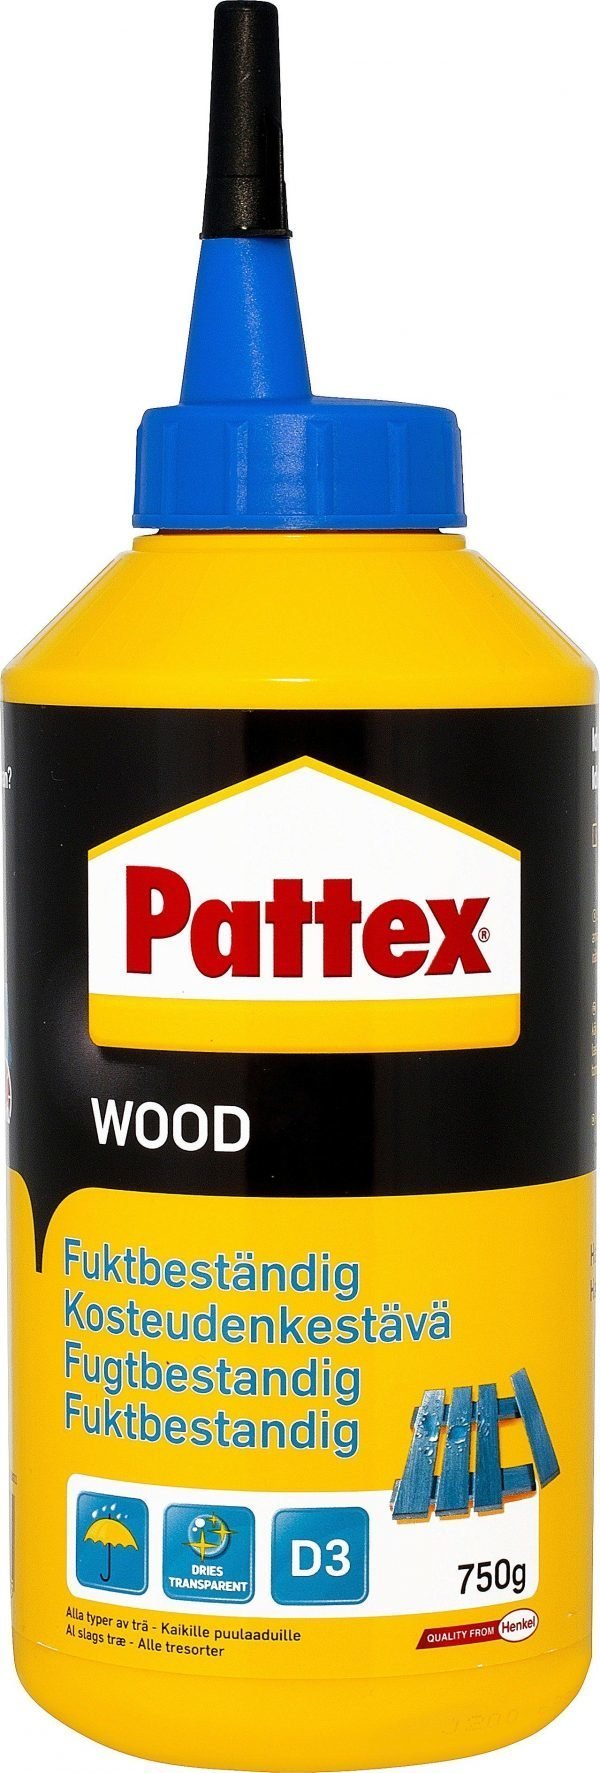 Pattex Wood Puuliima Kosteudenkestävä 750g